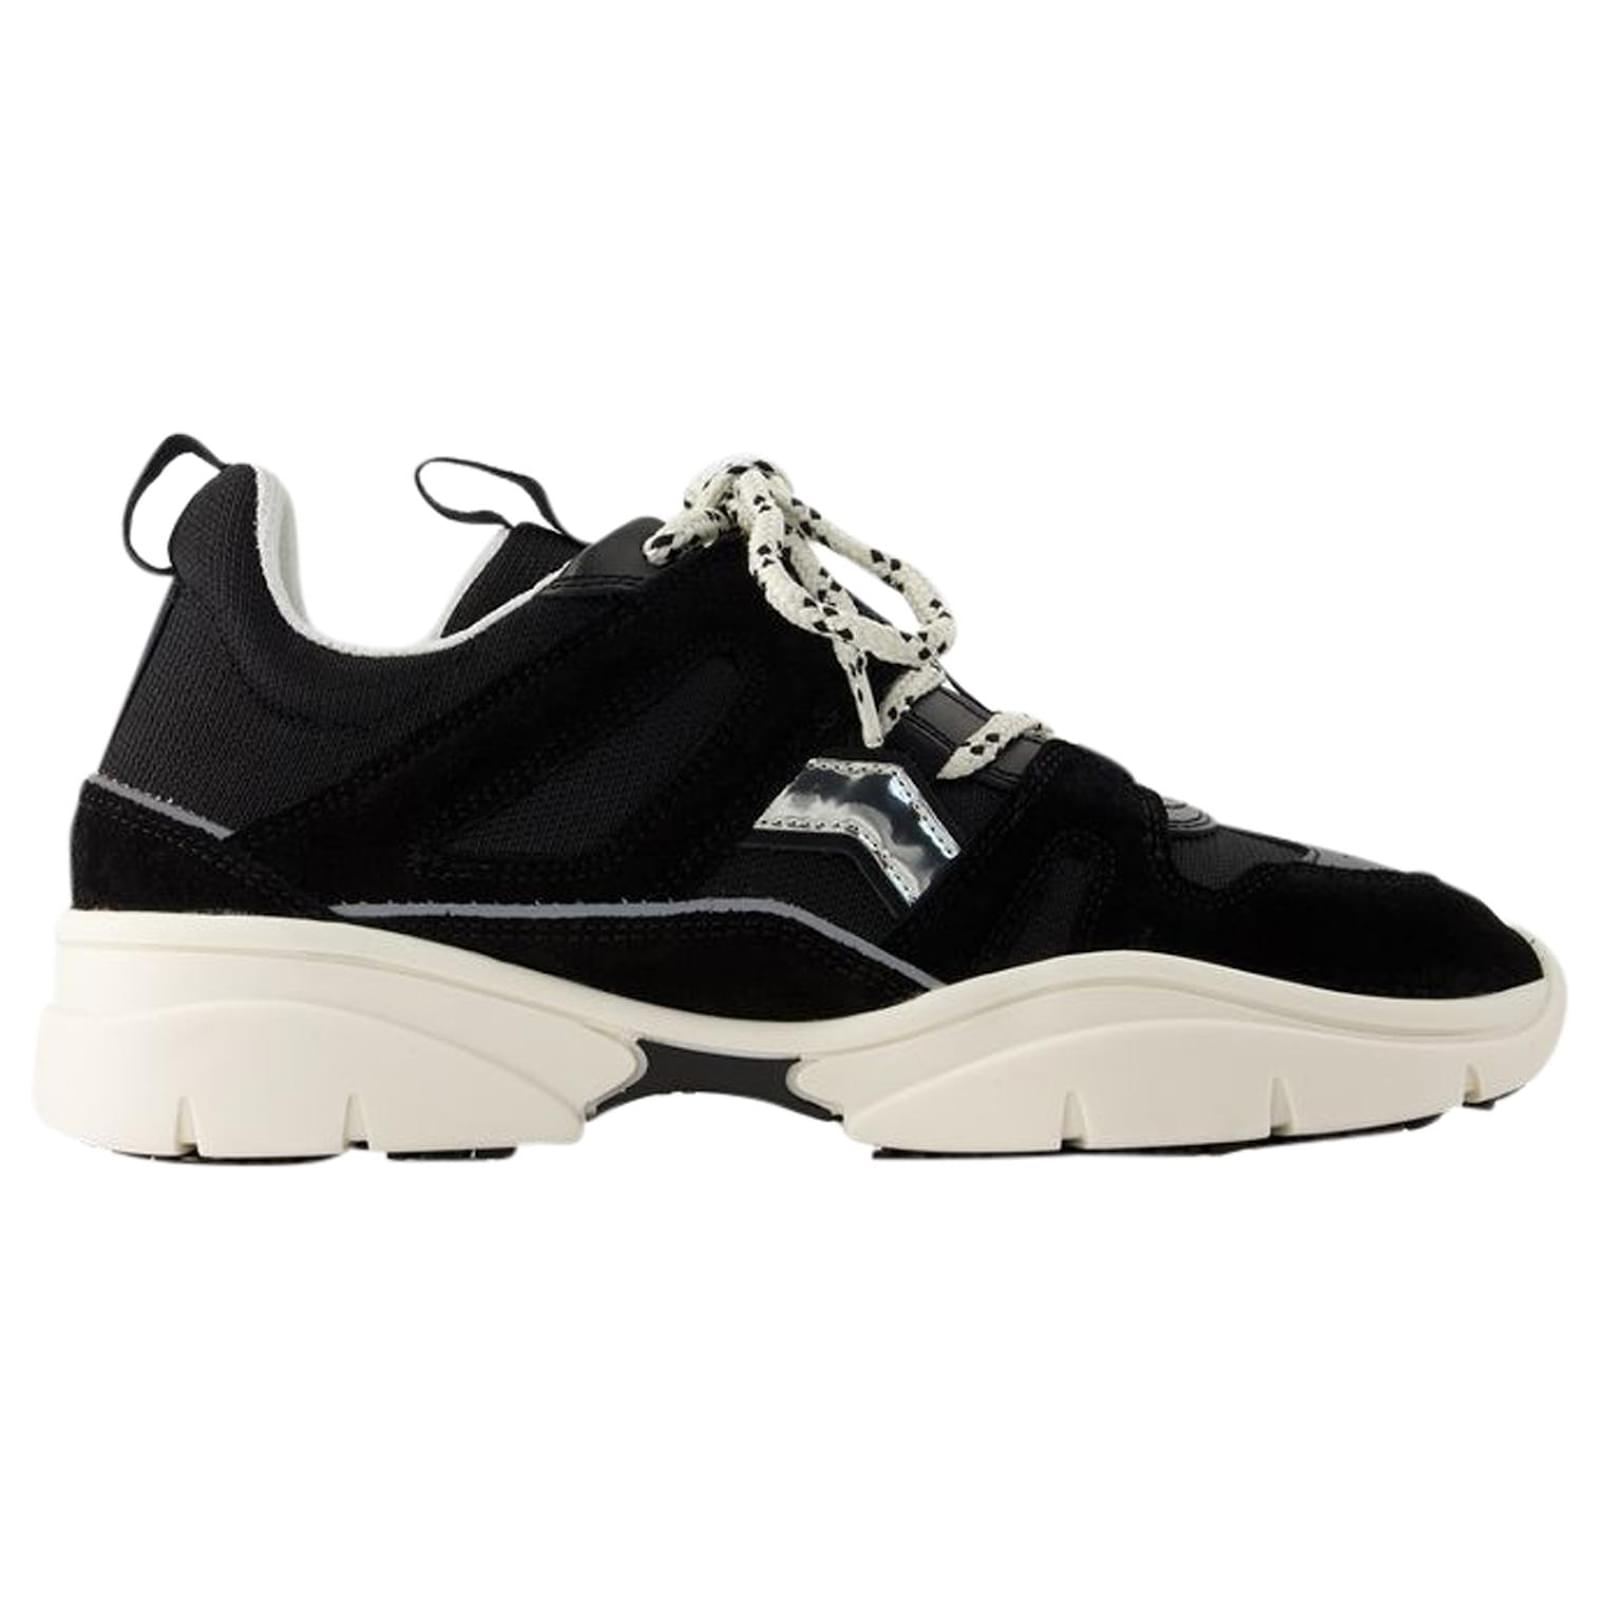 Kindsay Sneakers - Isabel Marant - Leather - Black ref.1023210 - Joli ...